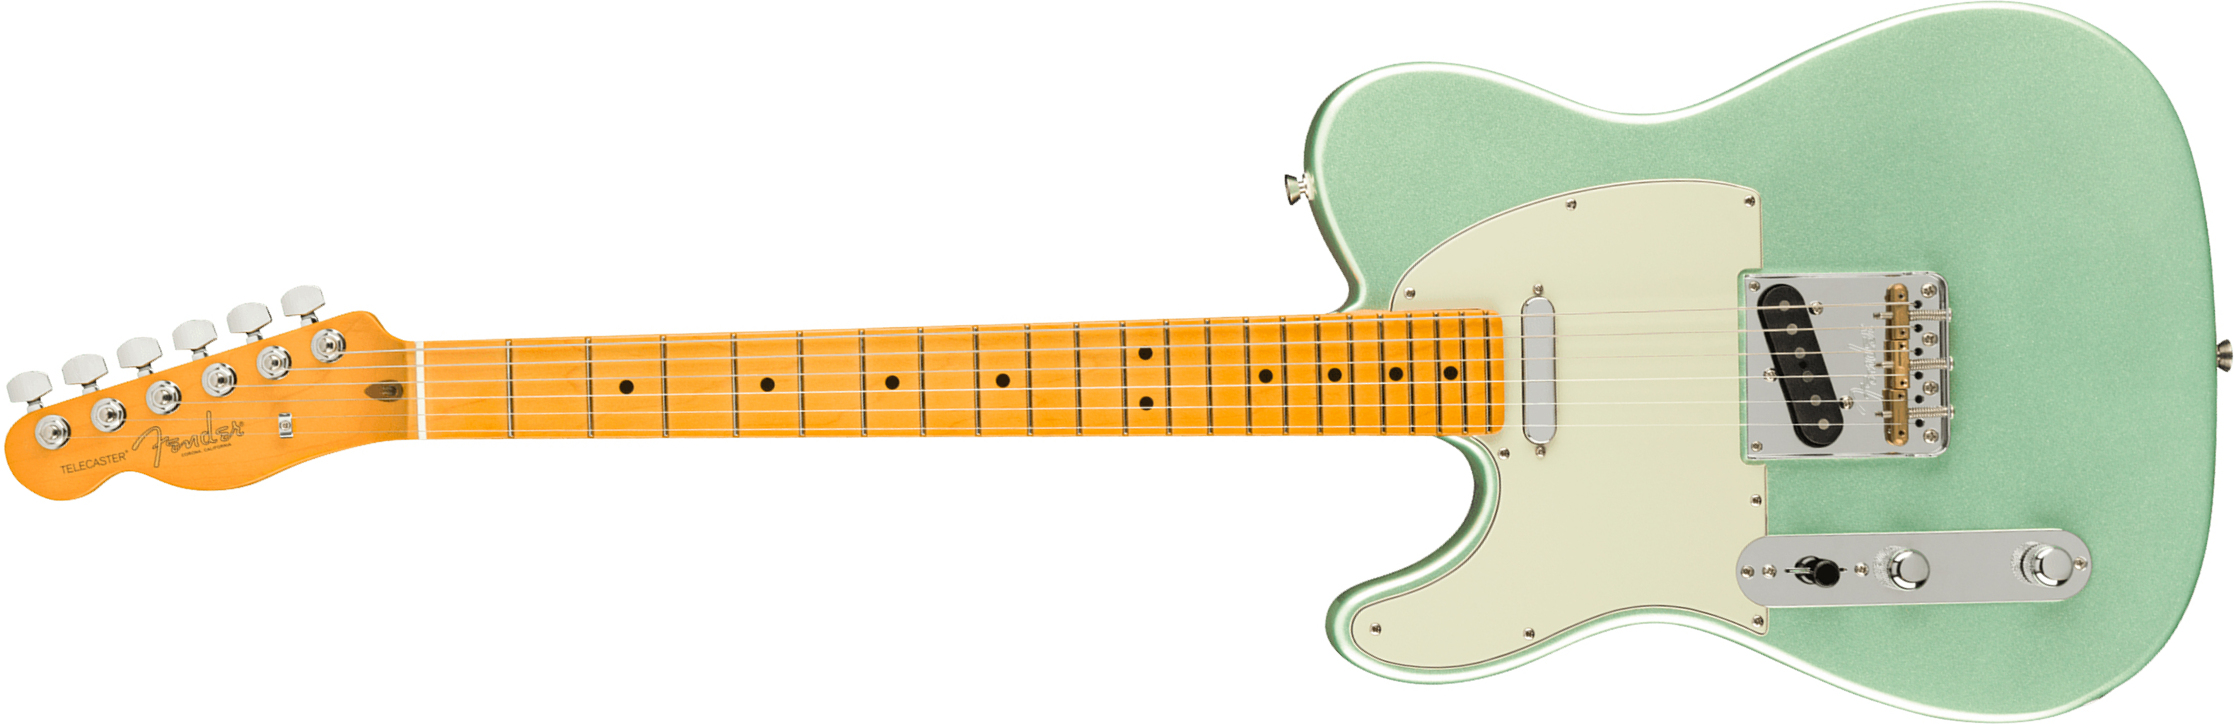 Fender Tele American Professional Ii Lh Gaucher Usa Mn - Mystic Surf Green - E-Gitarre für Linkshänder - Main picture